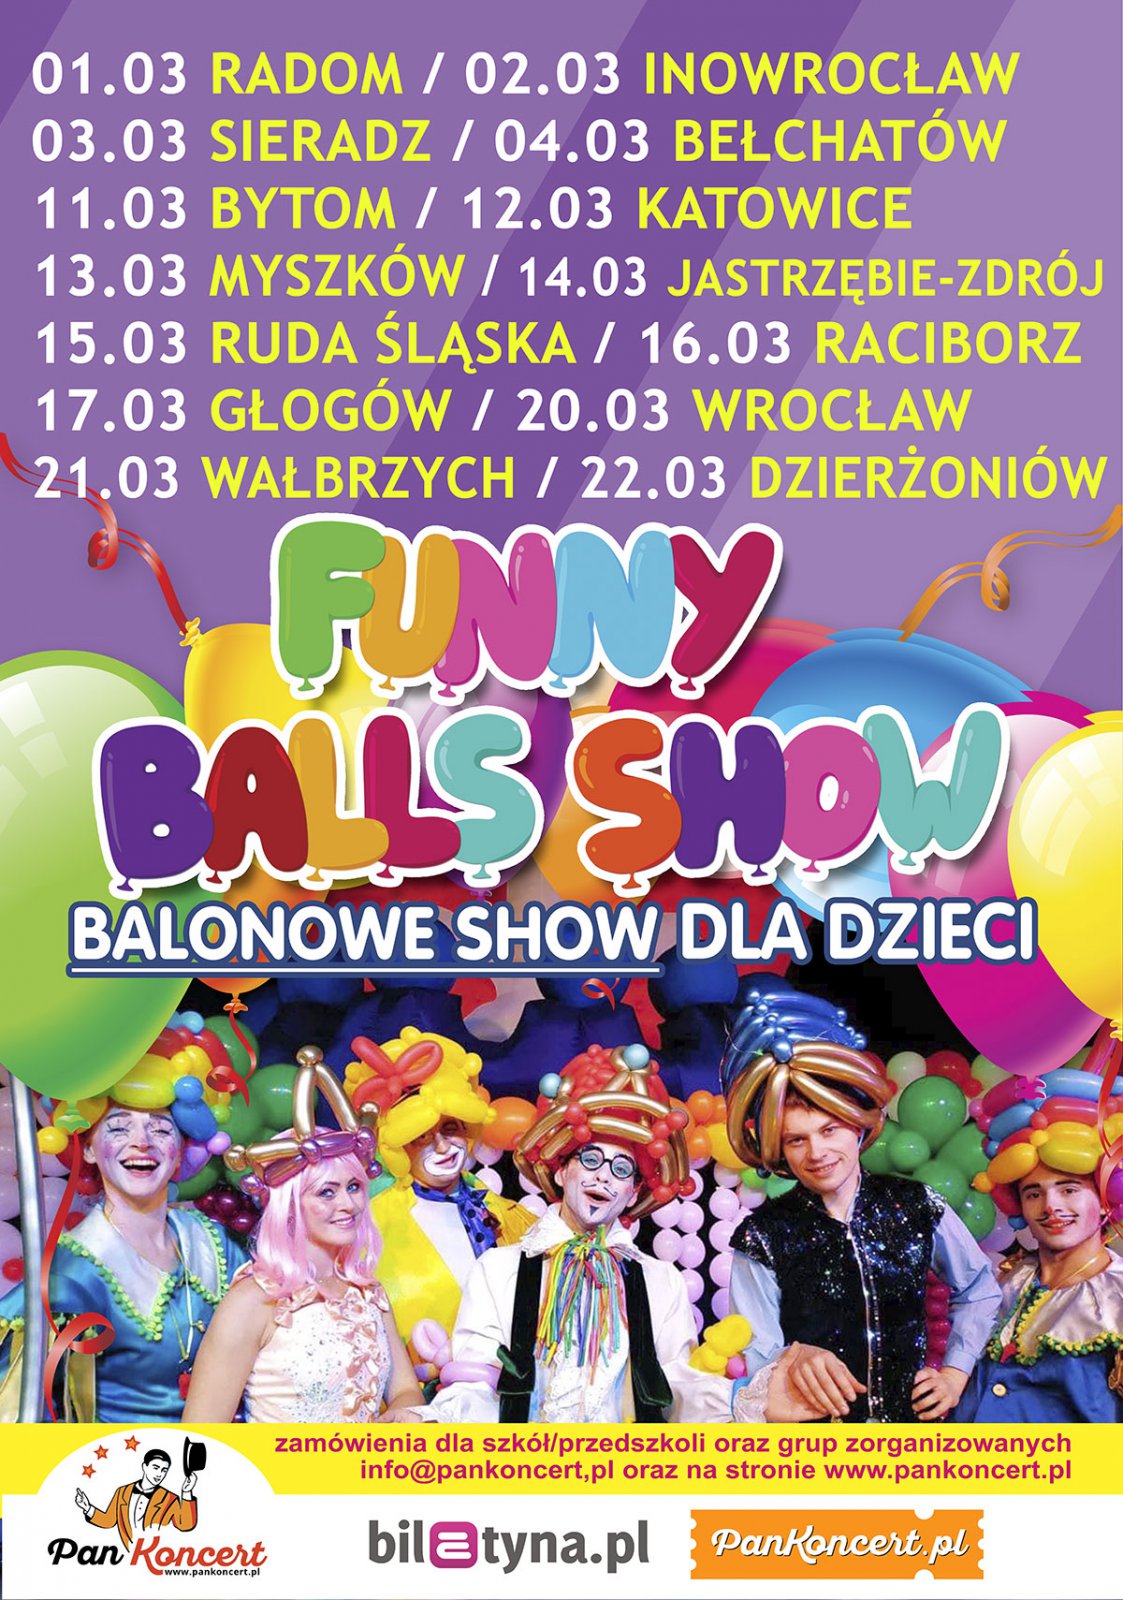 Plakat informujący o wydarzeniach balon show w Polsce